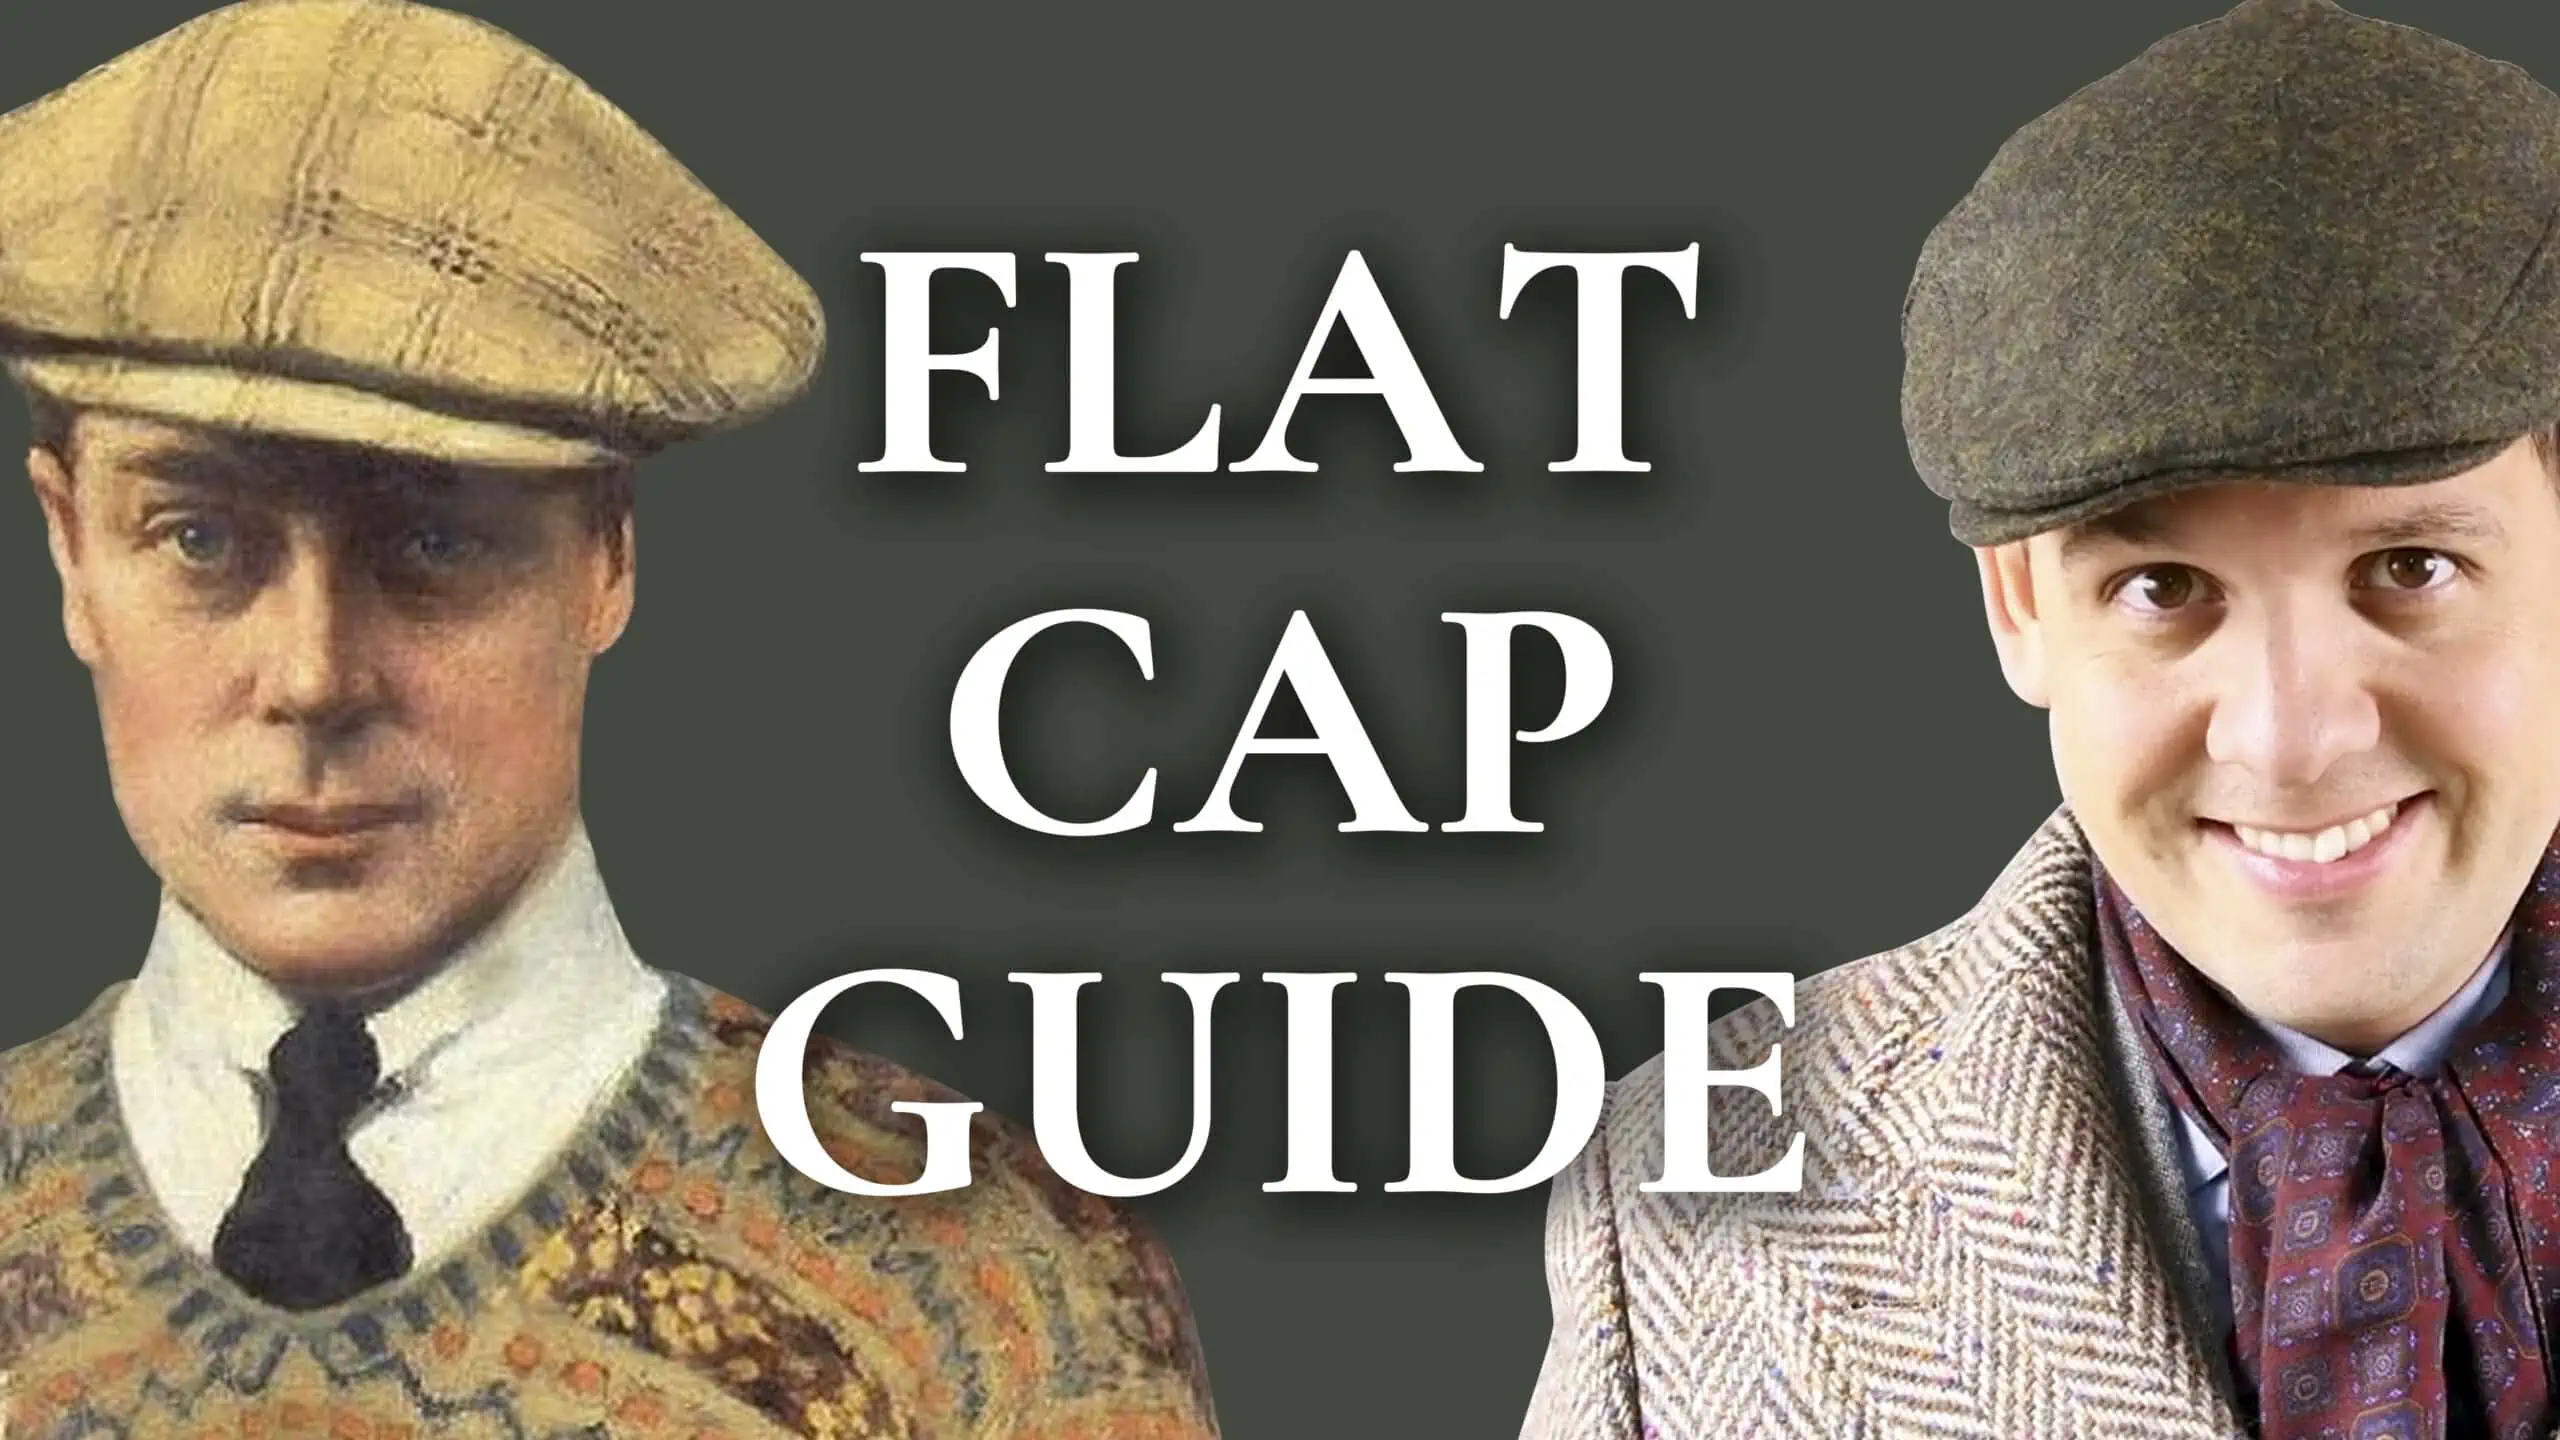 Flat Cap Guide - How To Pick A Newsboy Cap - Gentleman's Gazette